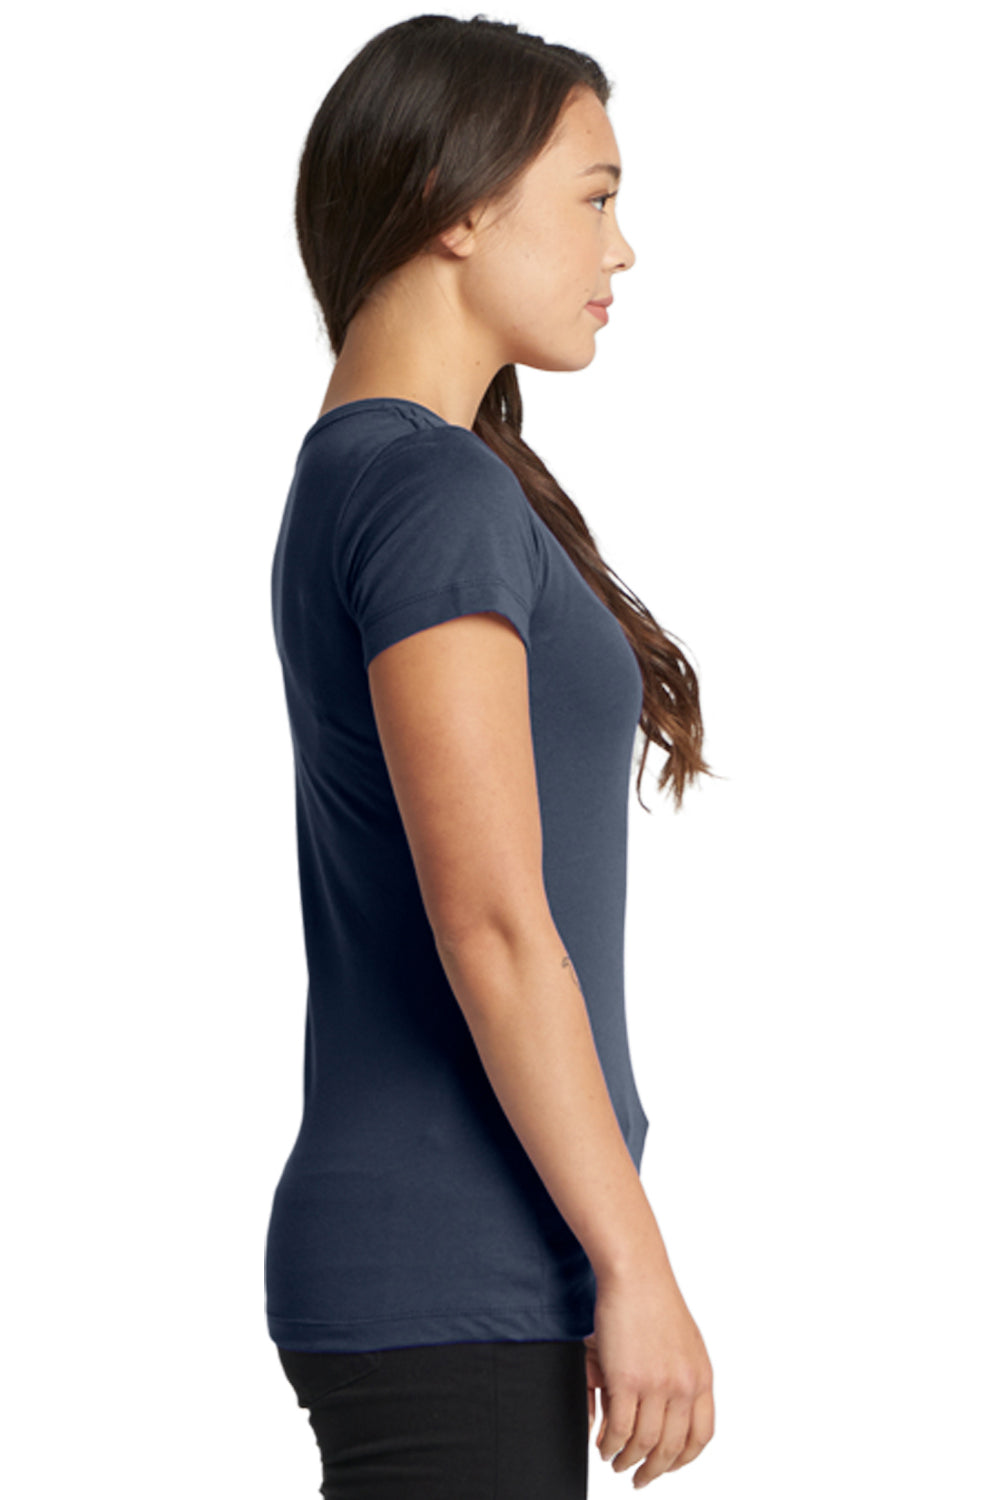 Next Level N1510 Womens Ideal Jersey Short Sleeve Crewneck T-Shirt Indigo Blue Side